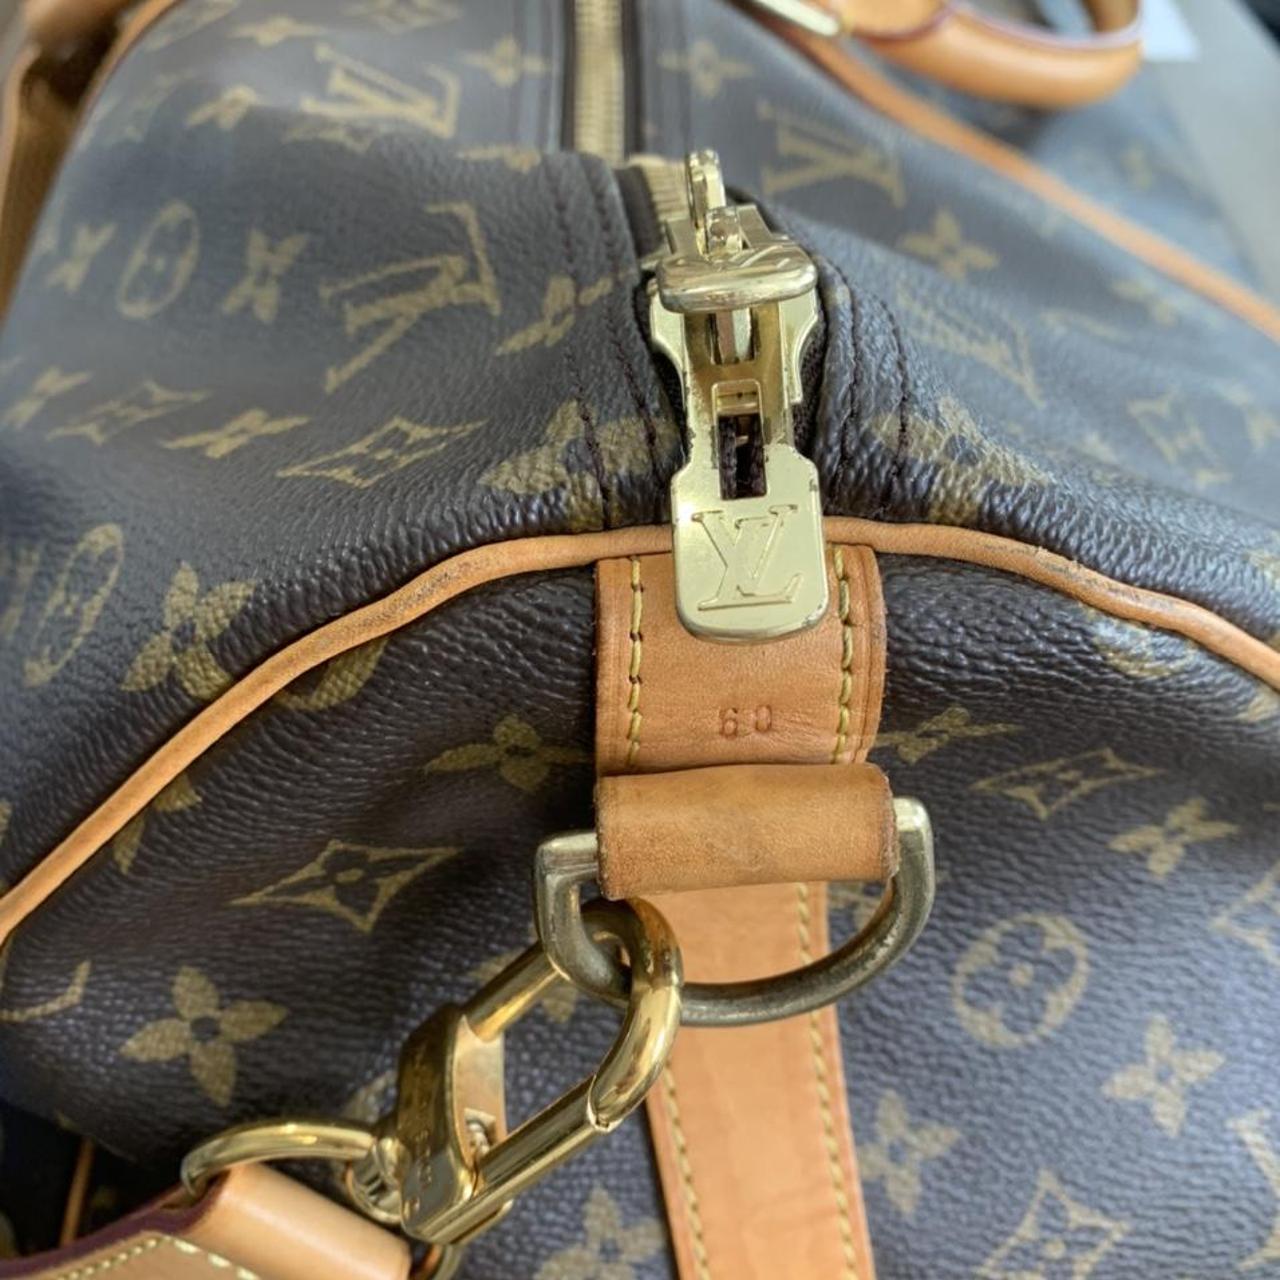 Louis Vuitton Keepall duffle bag Older, rarer - Depop